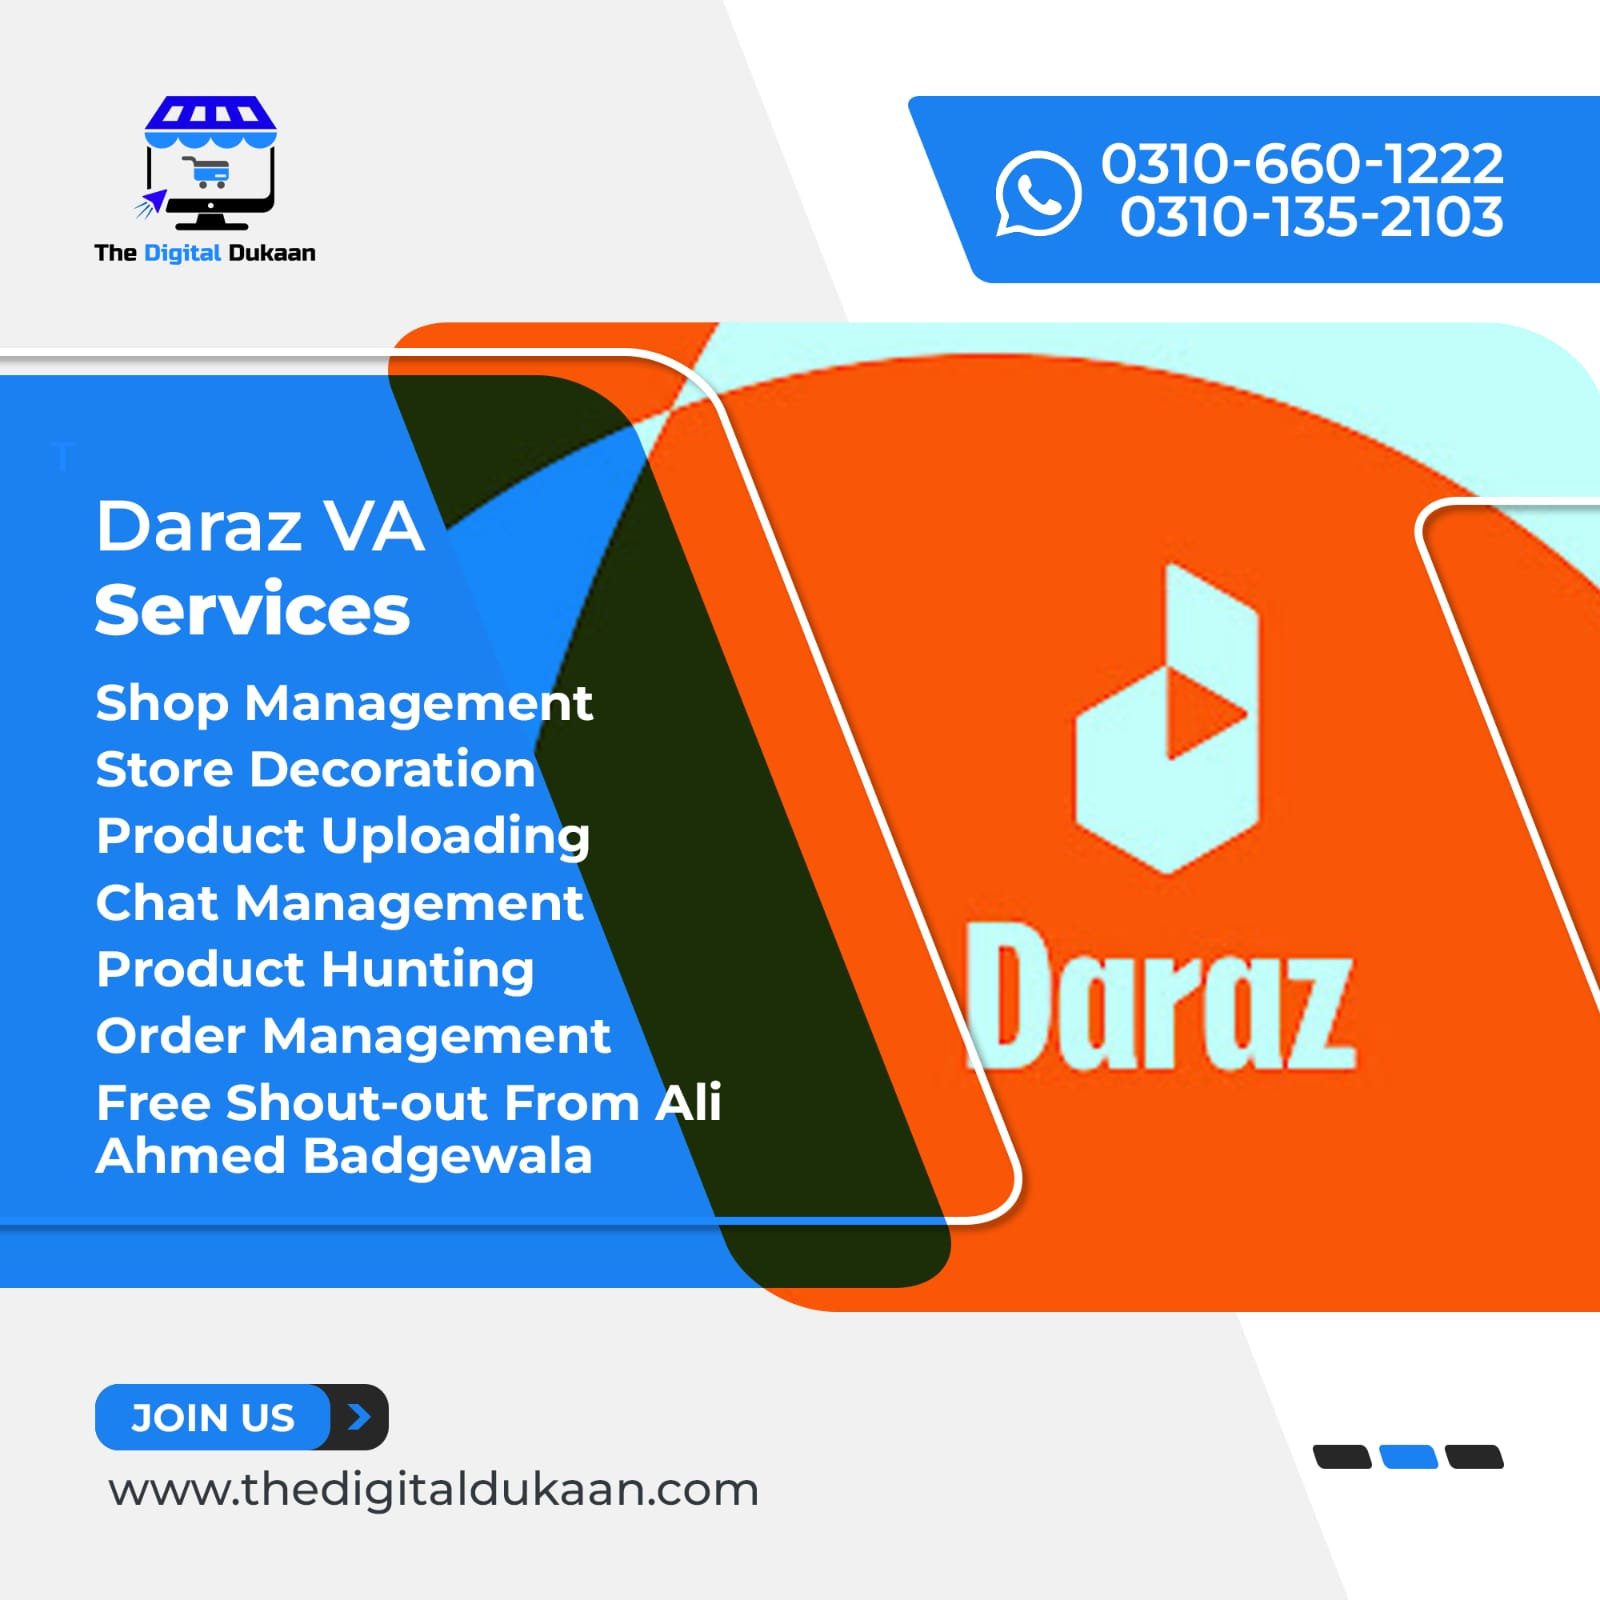 Daraz VA services